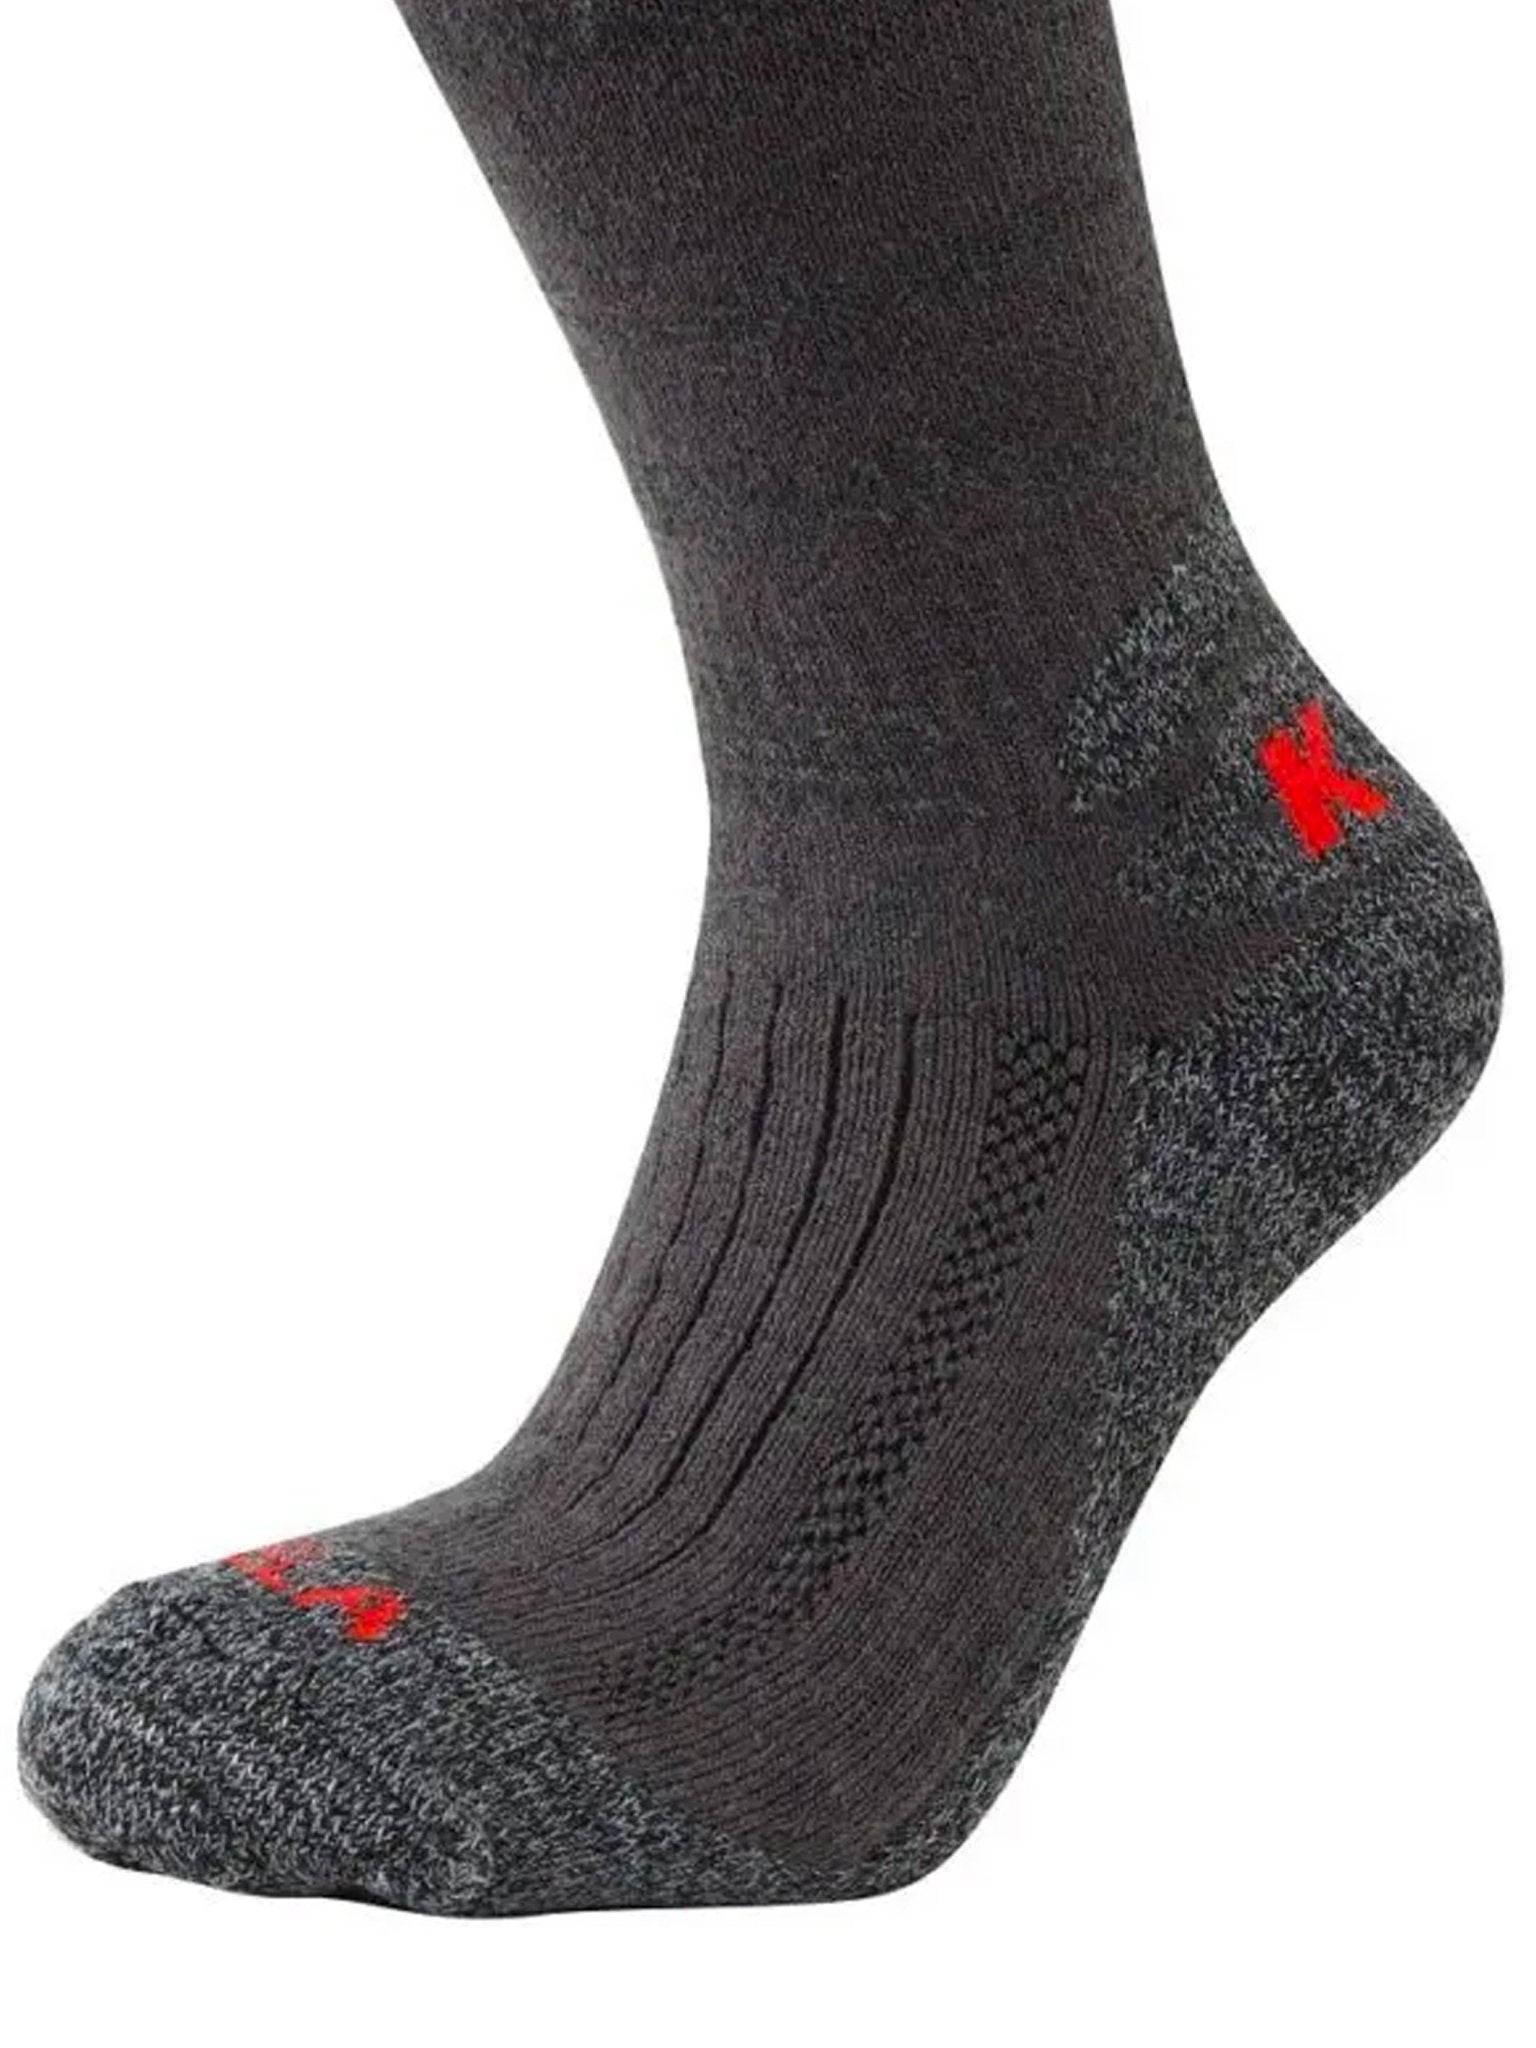 4elementsclothingKeelaKeela Outdoors - Primaloft Expedition Socks - Cushioned, Primoloft and Merino with Cordura mens socksSocks60250-122000-0-112